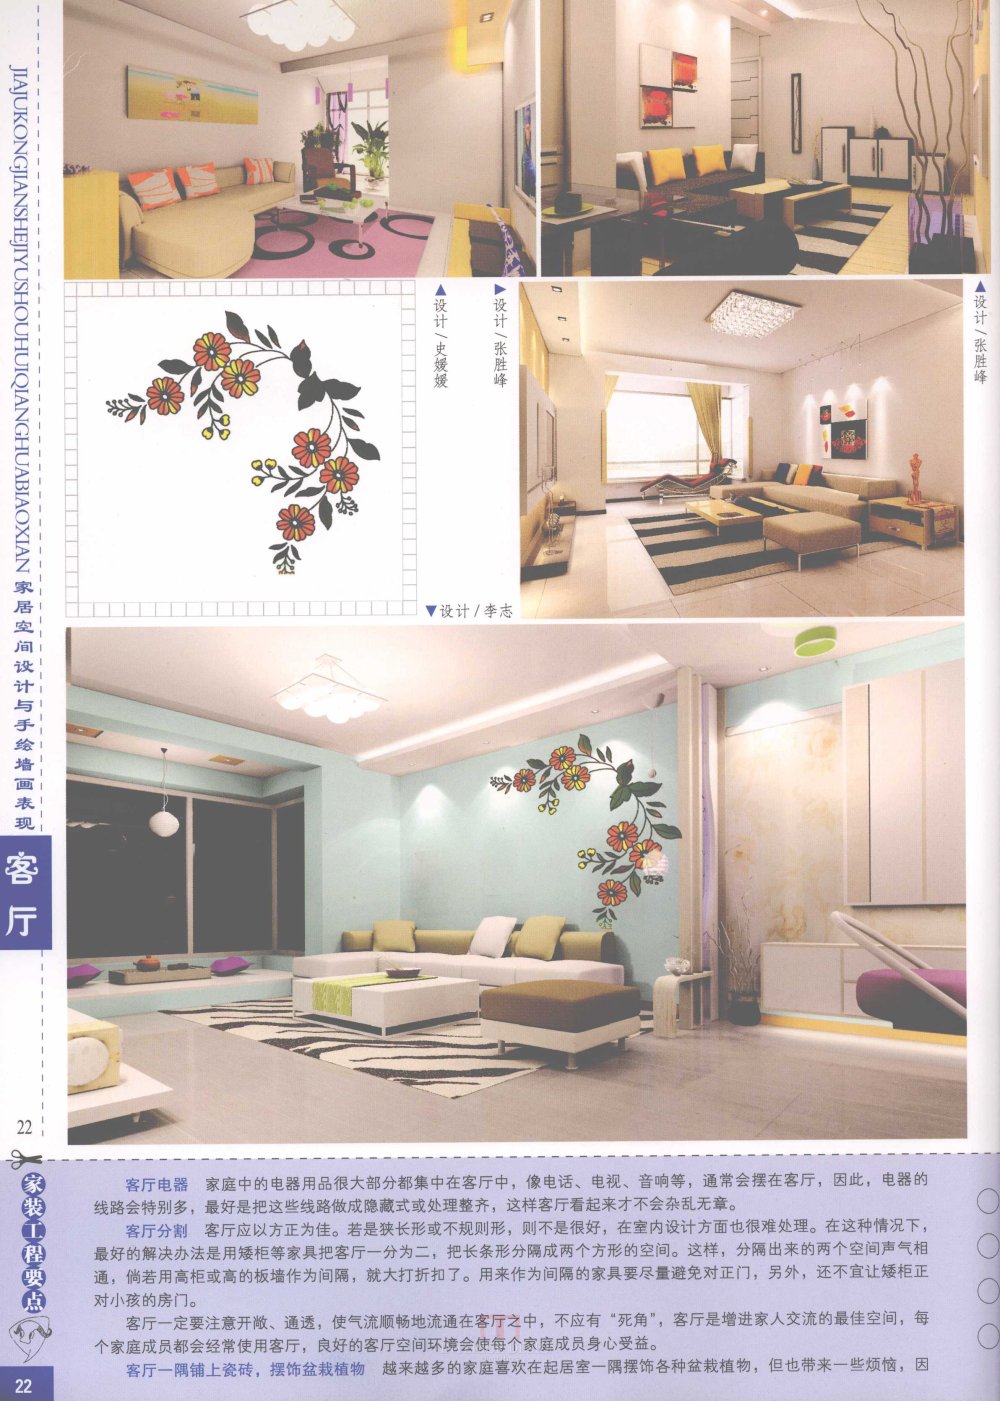 家居空间设计与手绘墙画表现客厅_家居空间设计与手绘墙画表现客厅-24.jpg